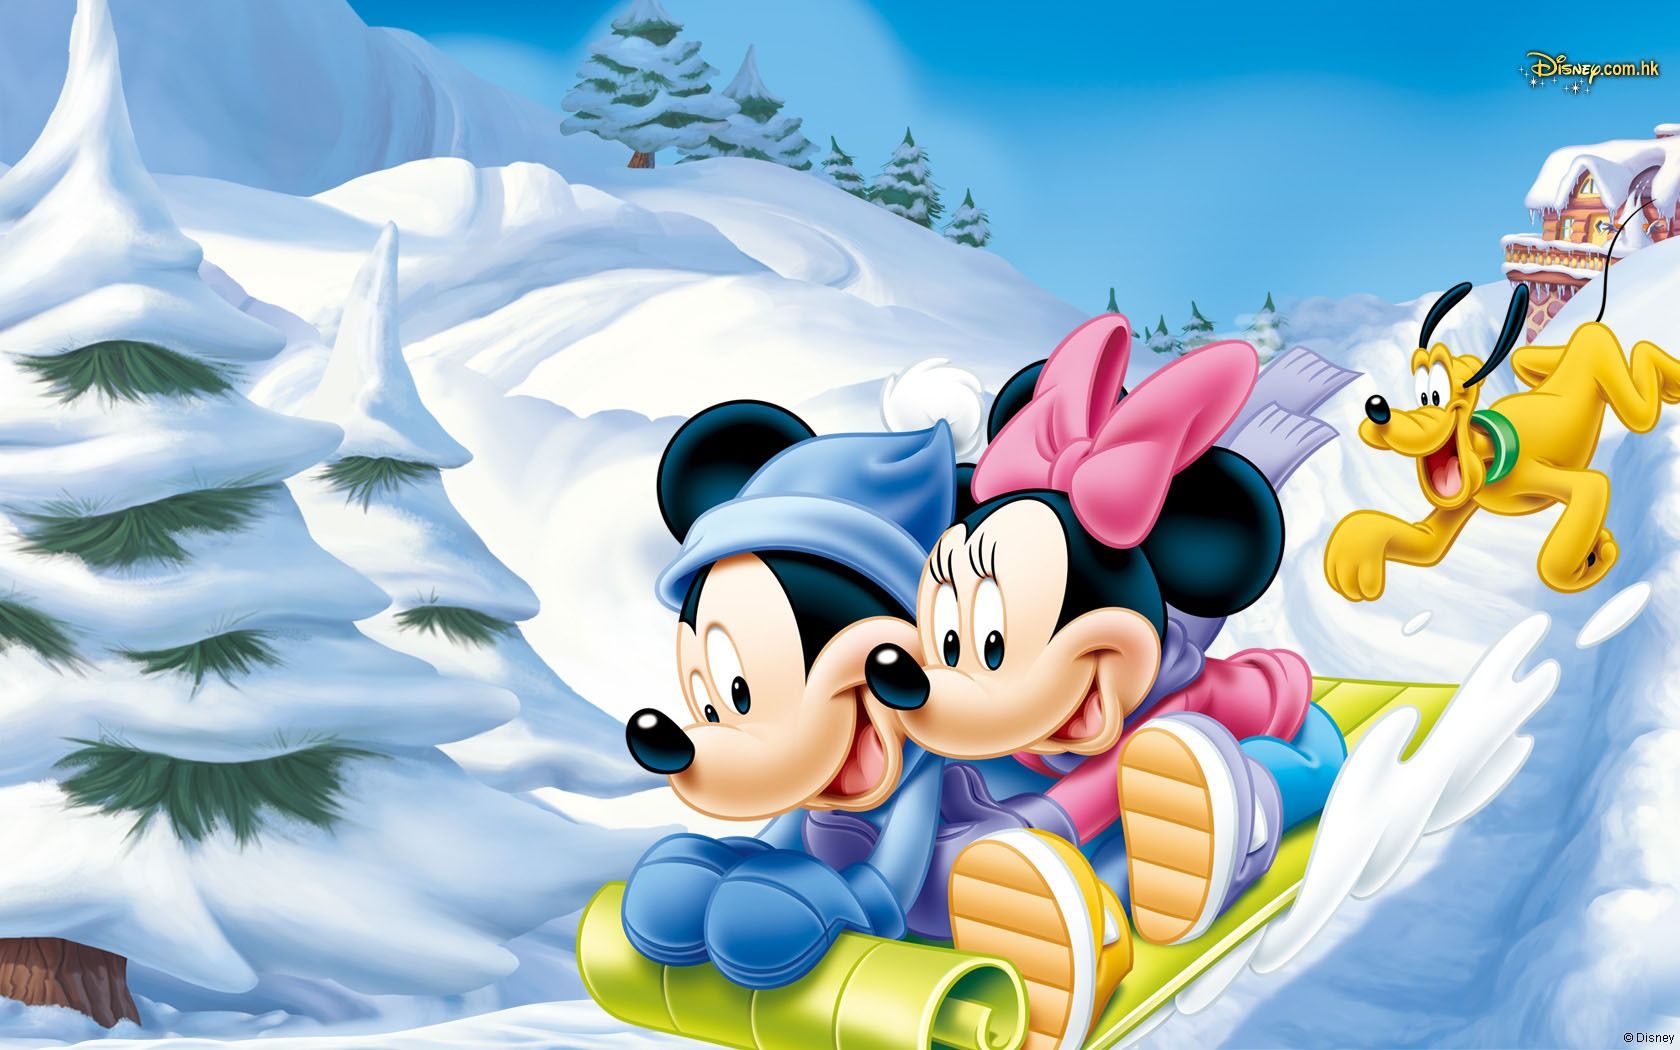 Disney Hd Cartoon Wallpaper Wpc5004510 - Mickey And Minnie Winter - HD Wallpaper 